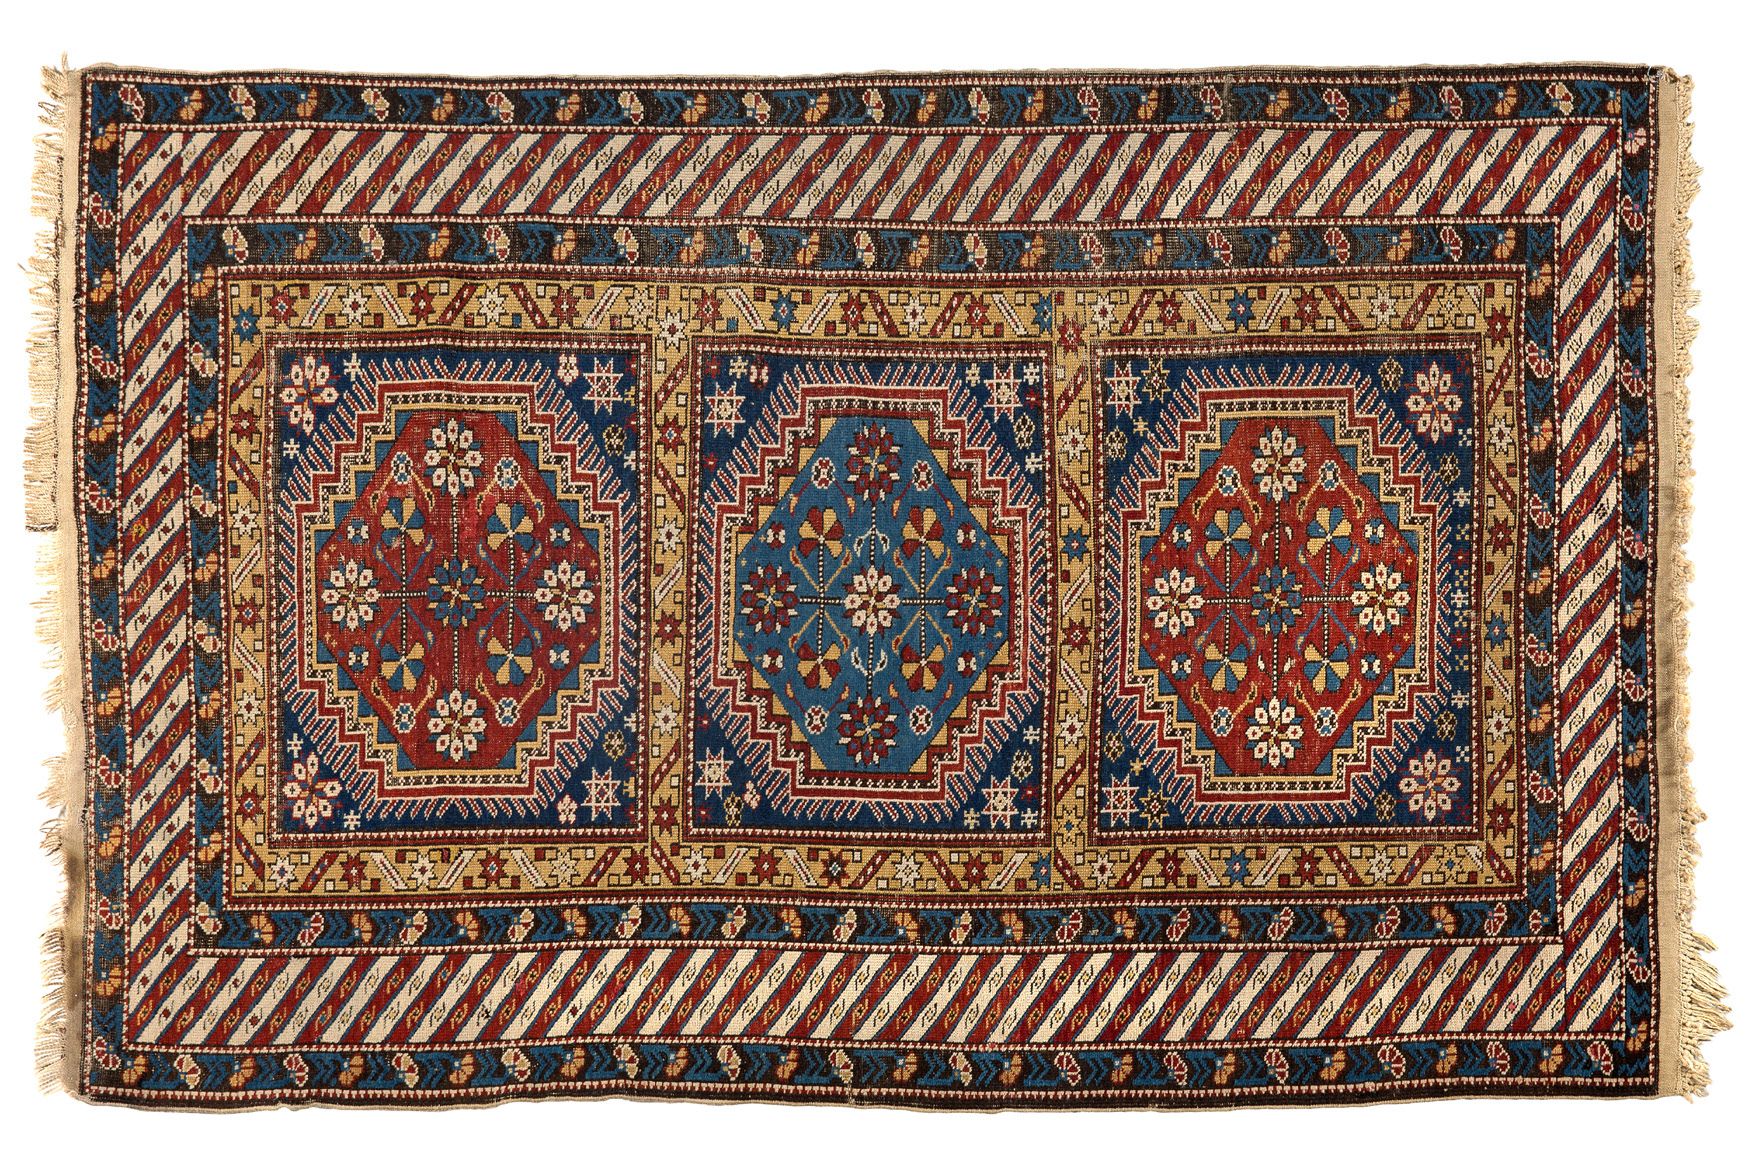 Null [RUGS]
Chichy tardío (Cáucaso), finales del siglo XIX. Terciopelo de lana s&hellip;